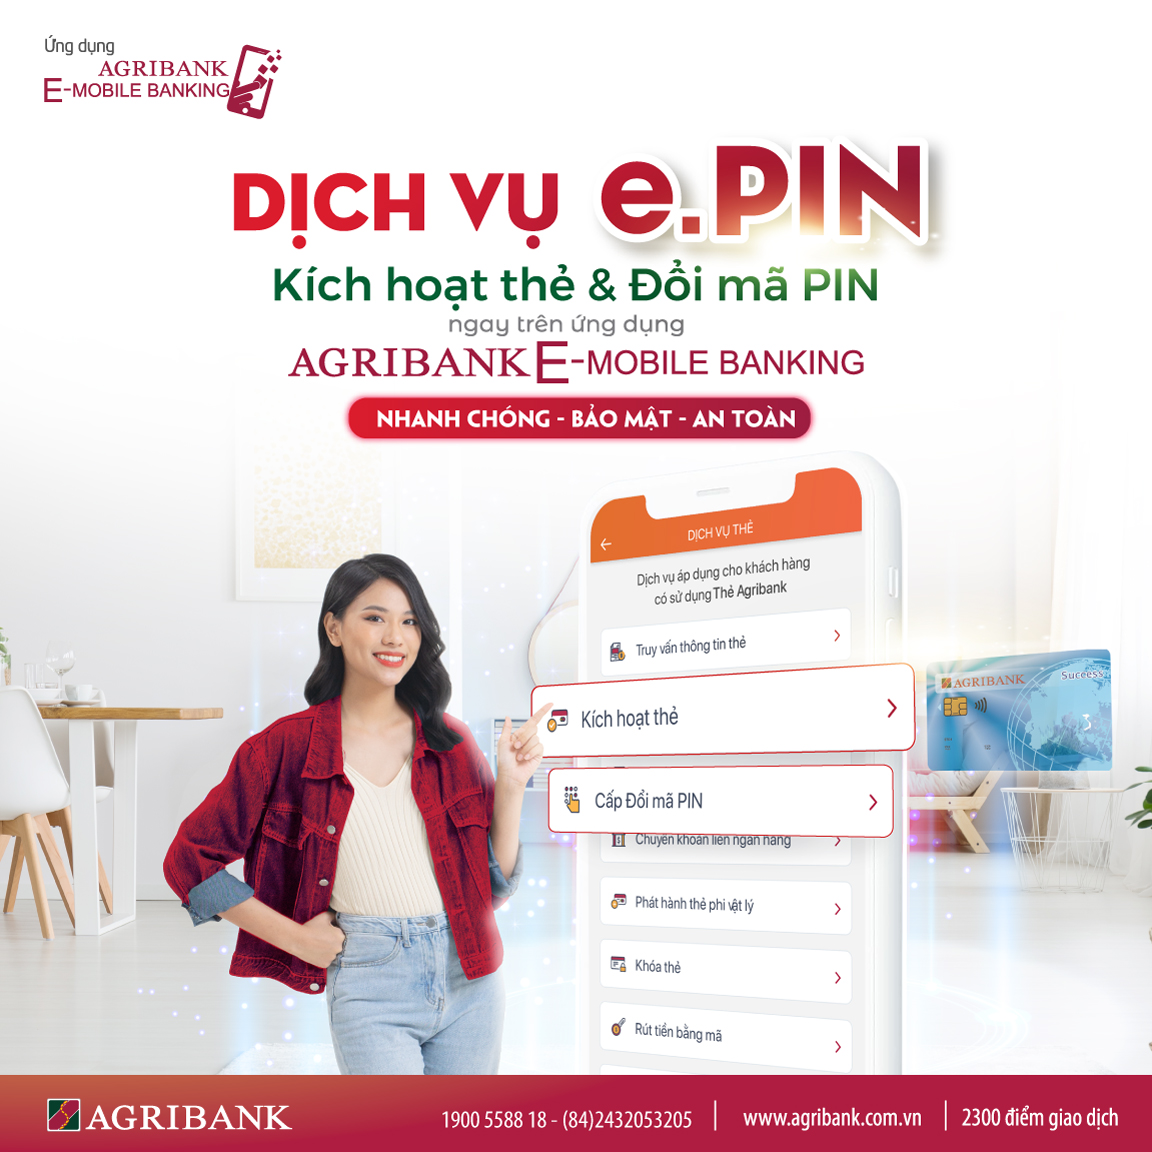 Agribank triển khai mã PIN điện tử cho khách hàng - Ảnh 1